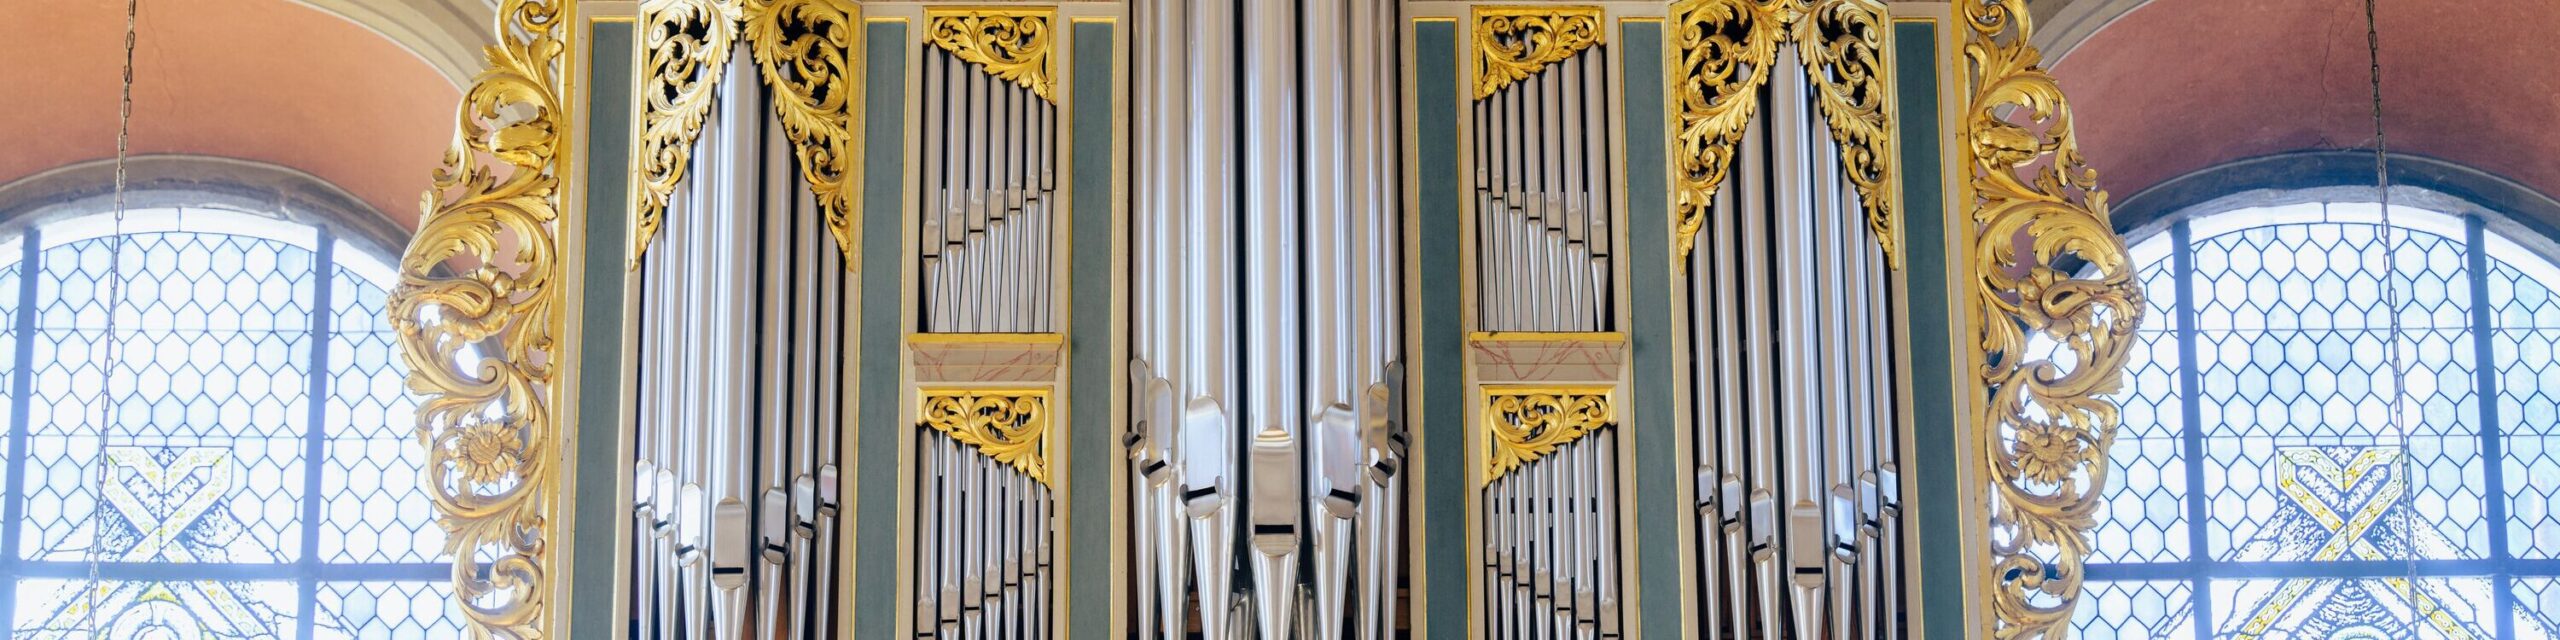 Die Orgel in der Kapuzinerkapelle Paderborn 4